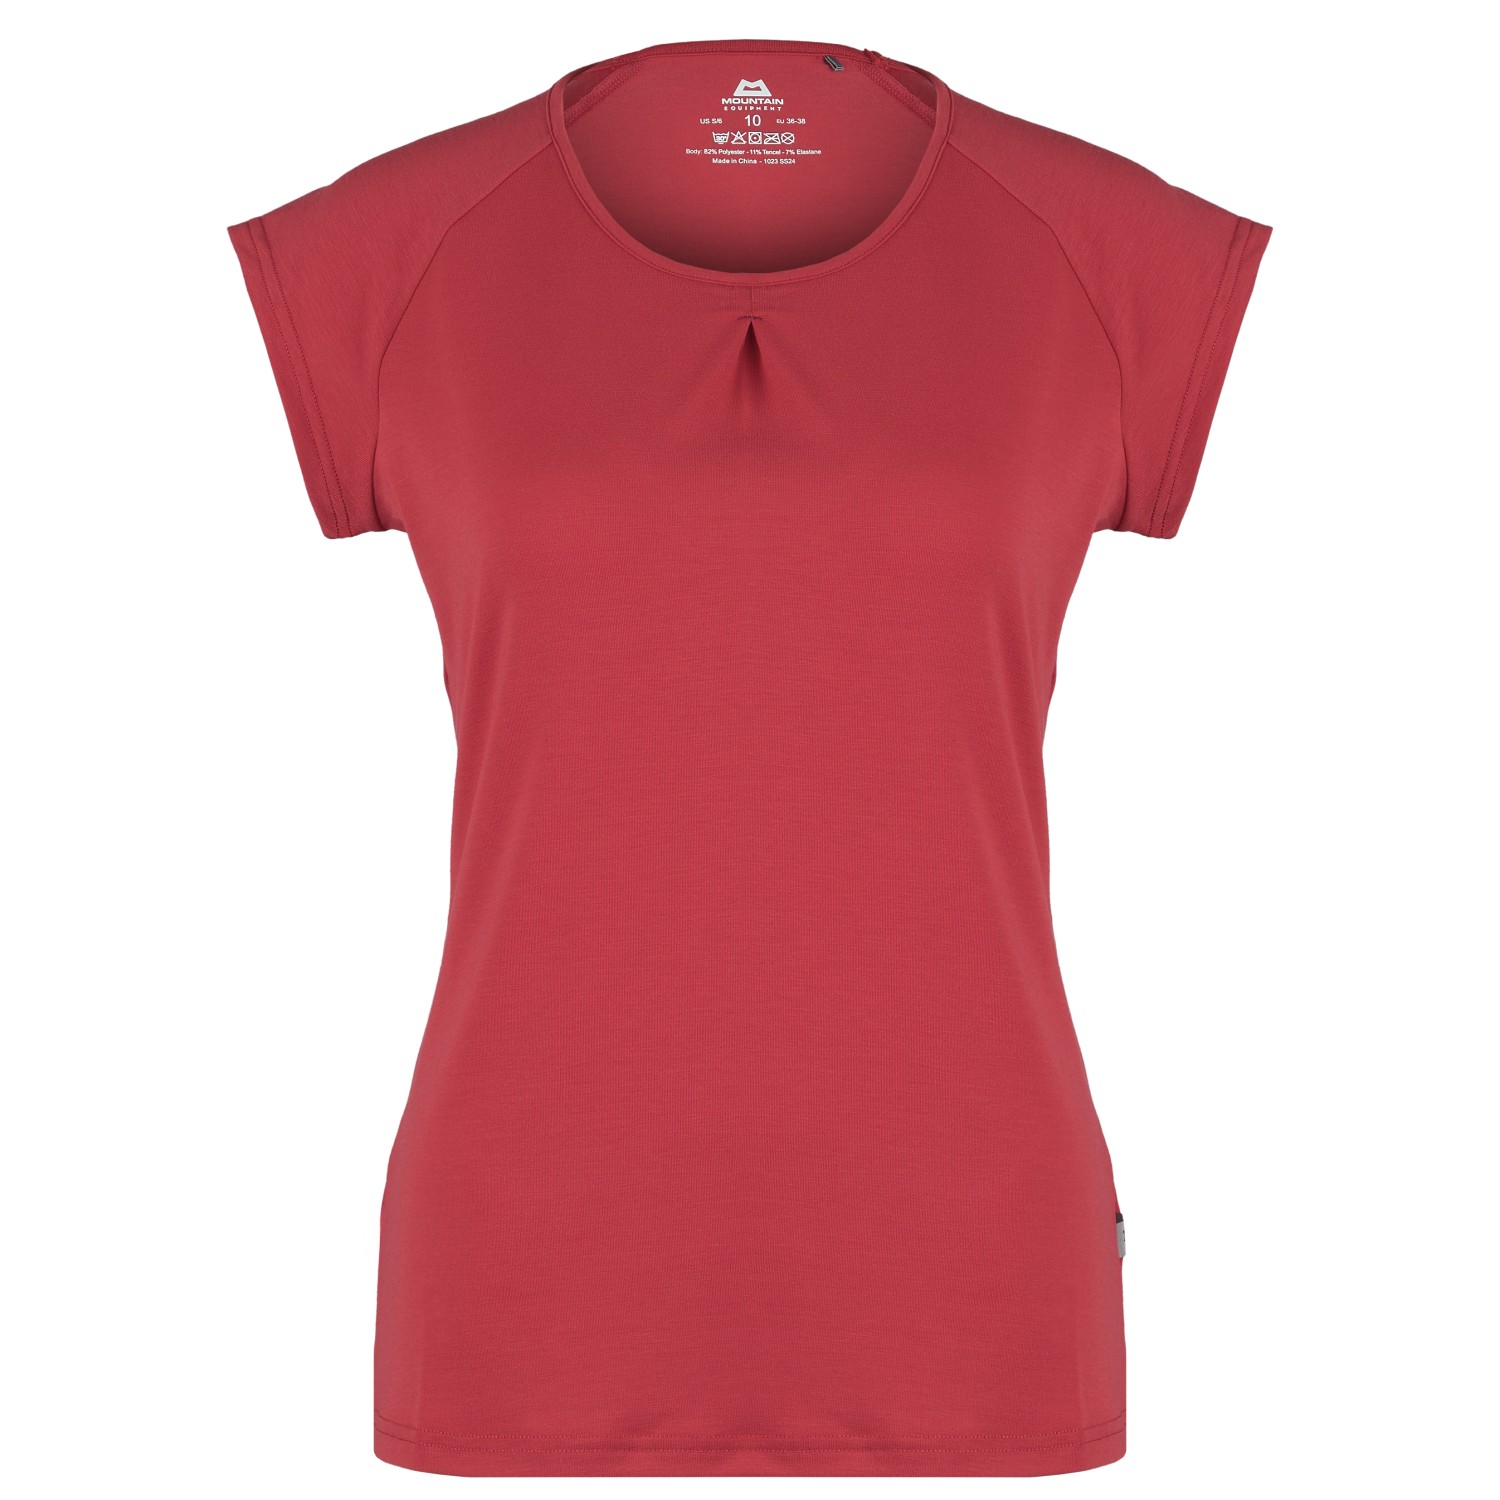 Функциональная рубашка Mountain Equipment Women's Equinox Tee, цвет Rosewood